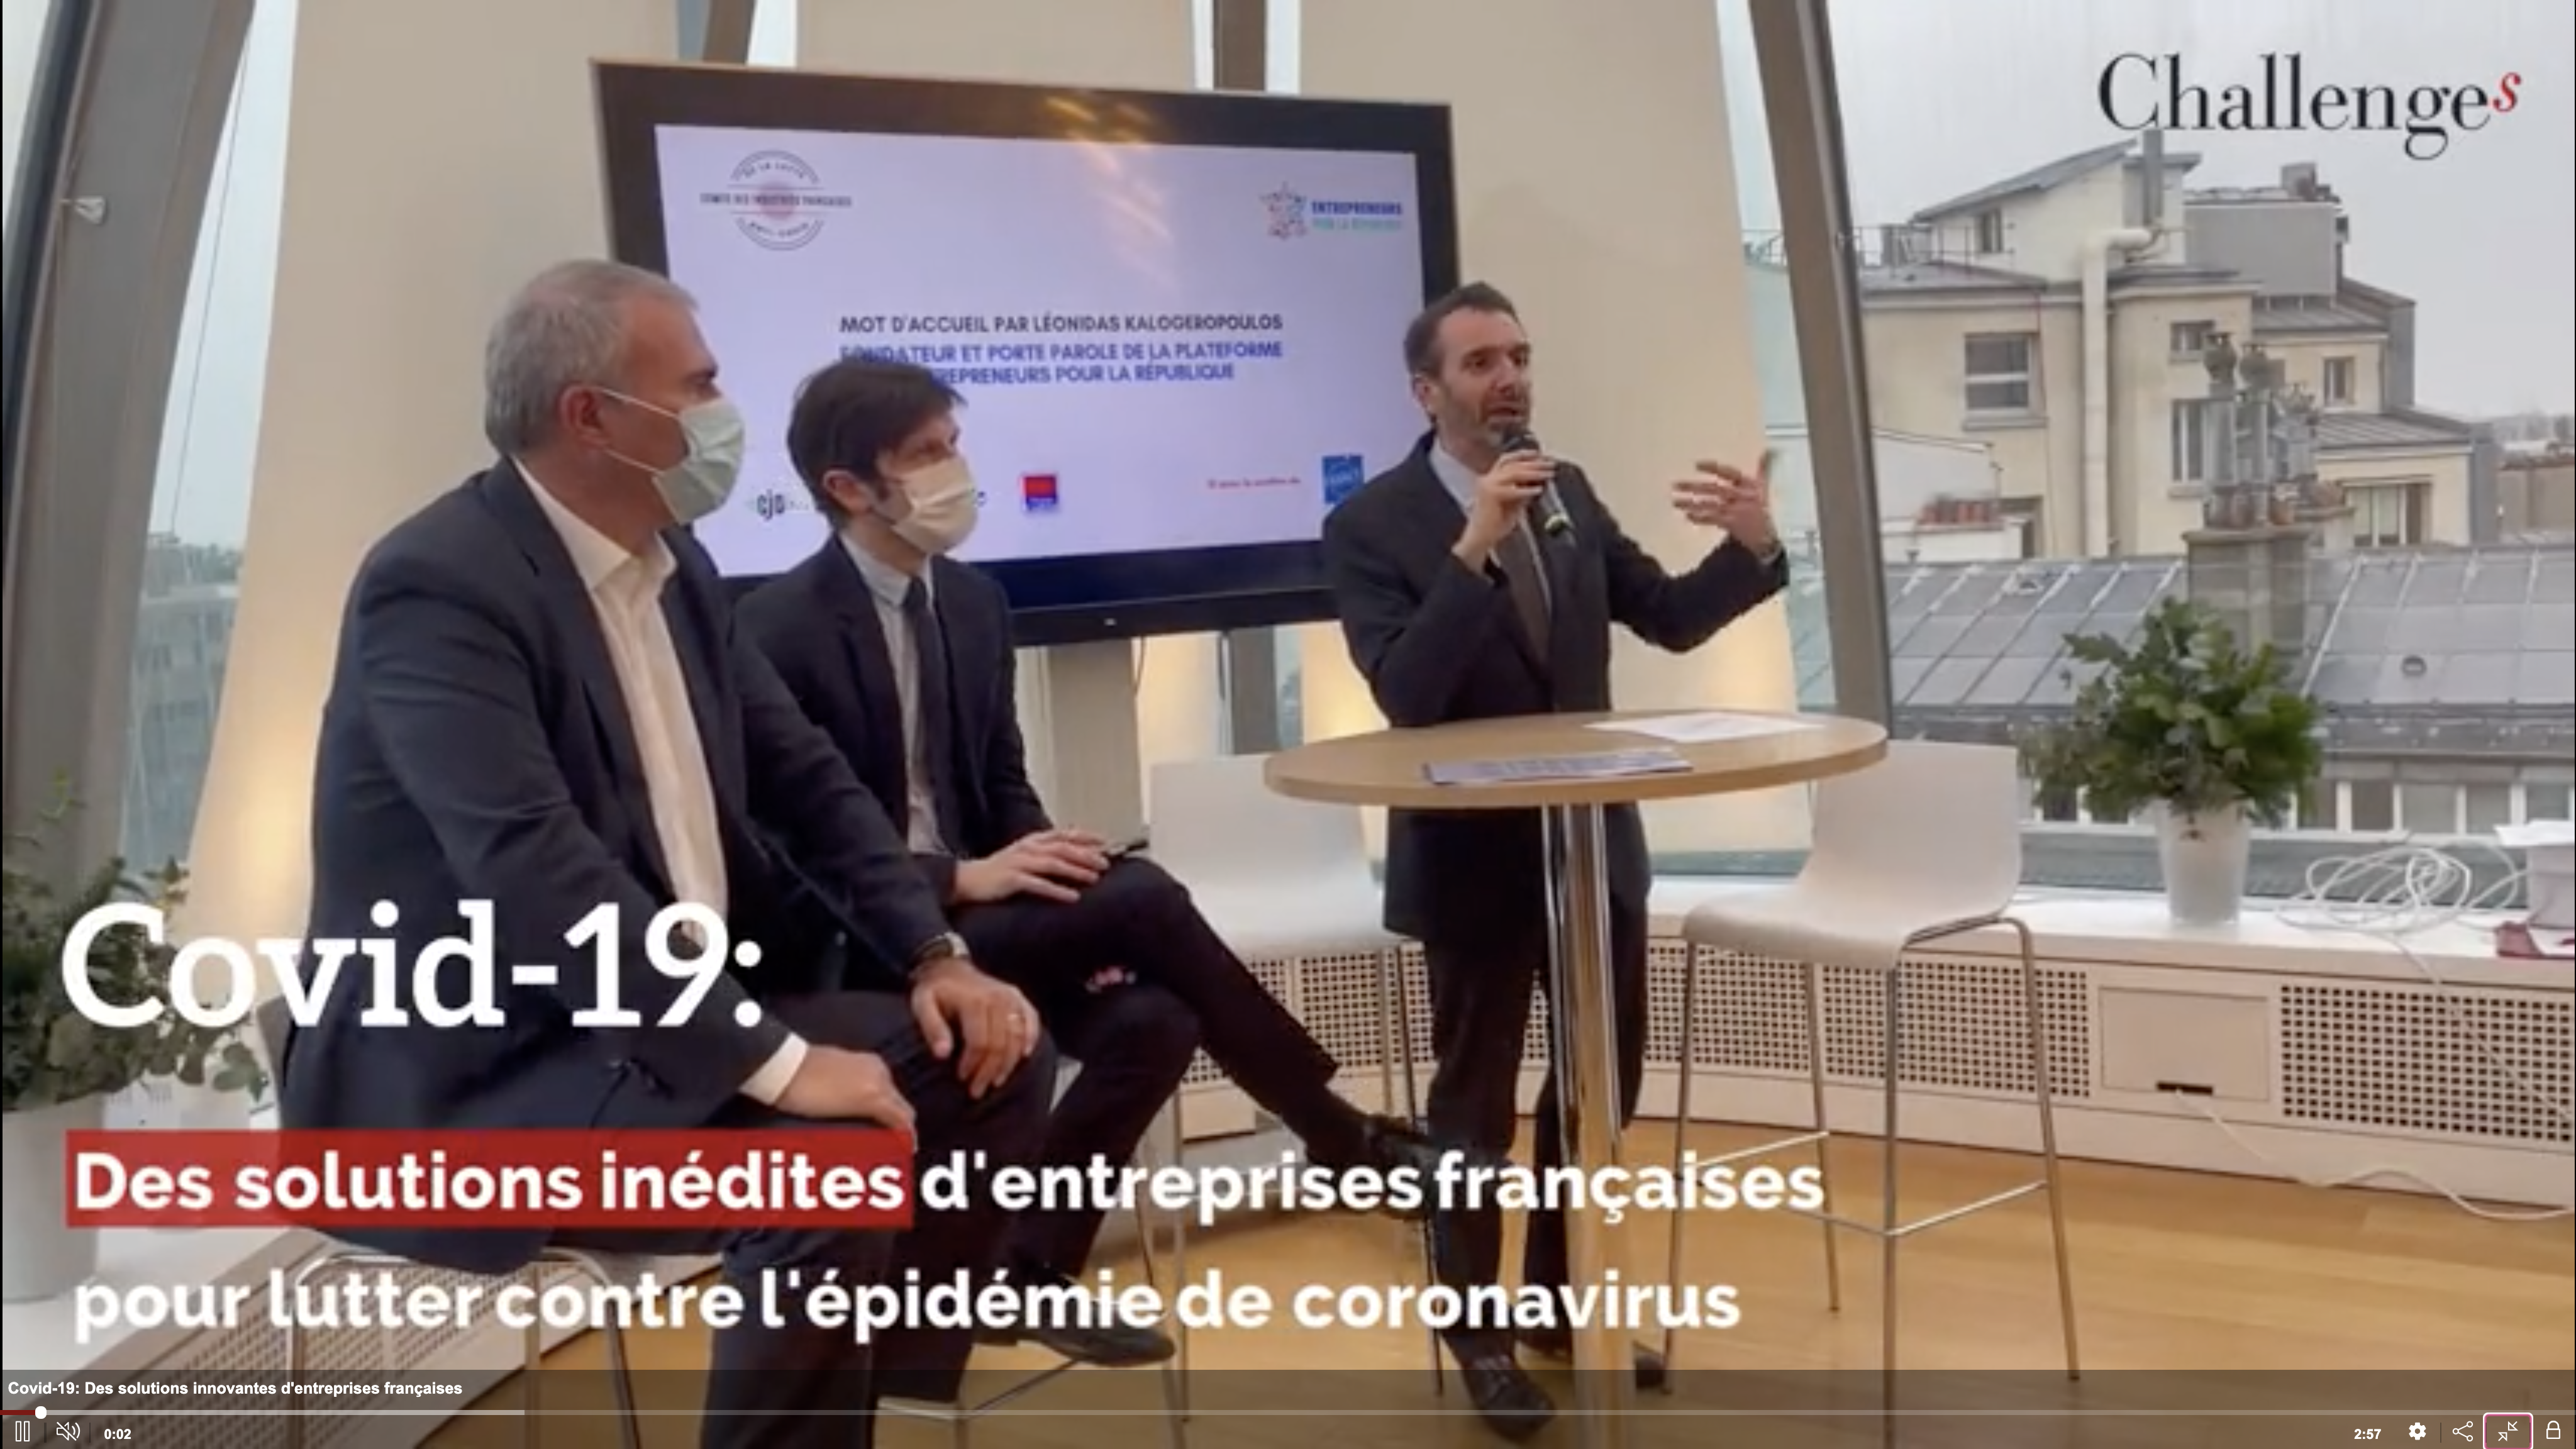 COVID-19 : Des solutions innovantes d’entreprises françaises